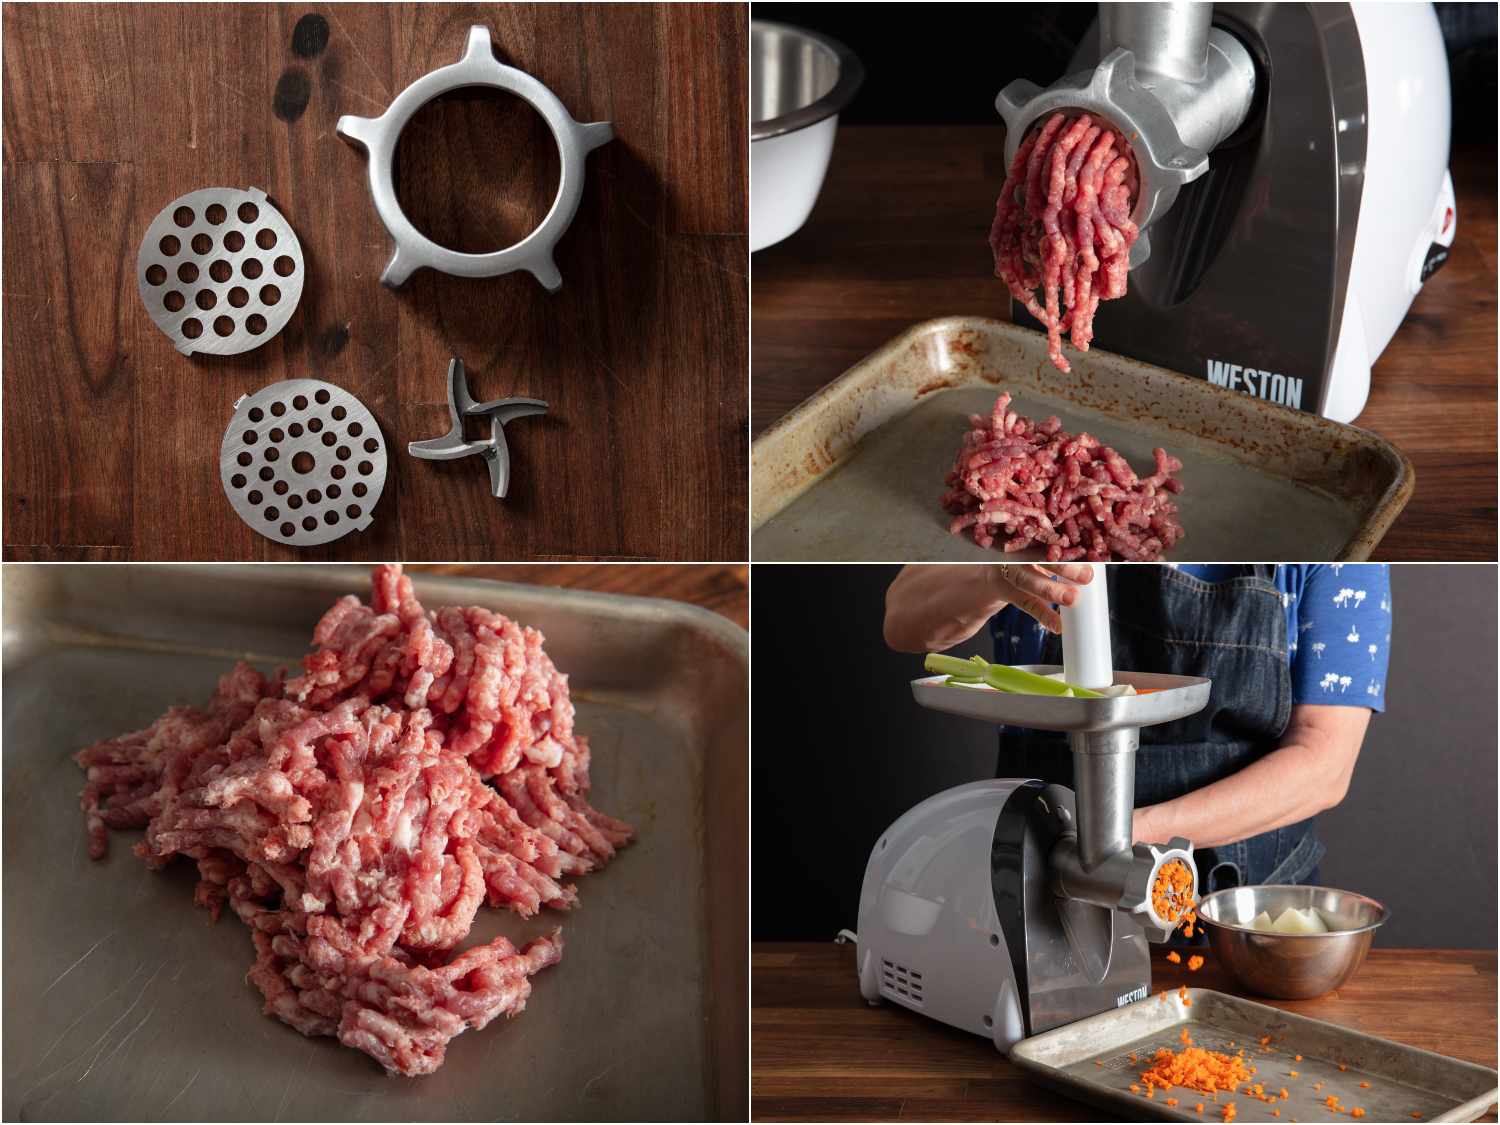 威斯顿绞肉机特点:金属部件;磨肉;地面猪肉;磨调味蔬菜